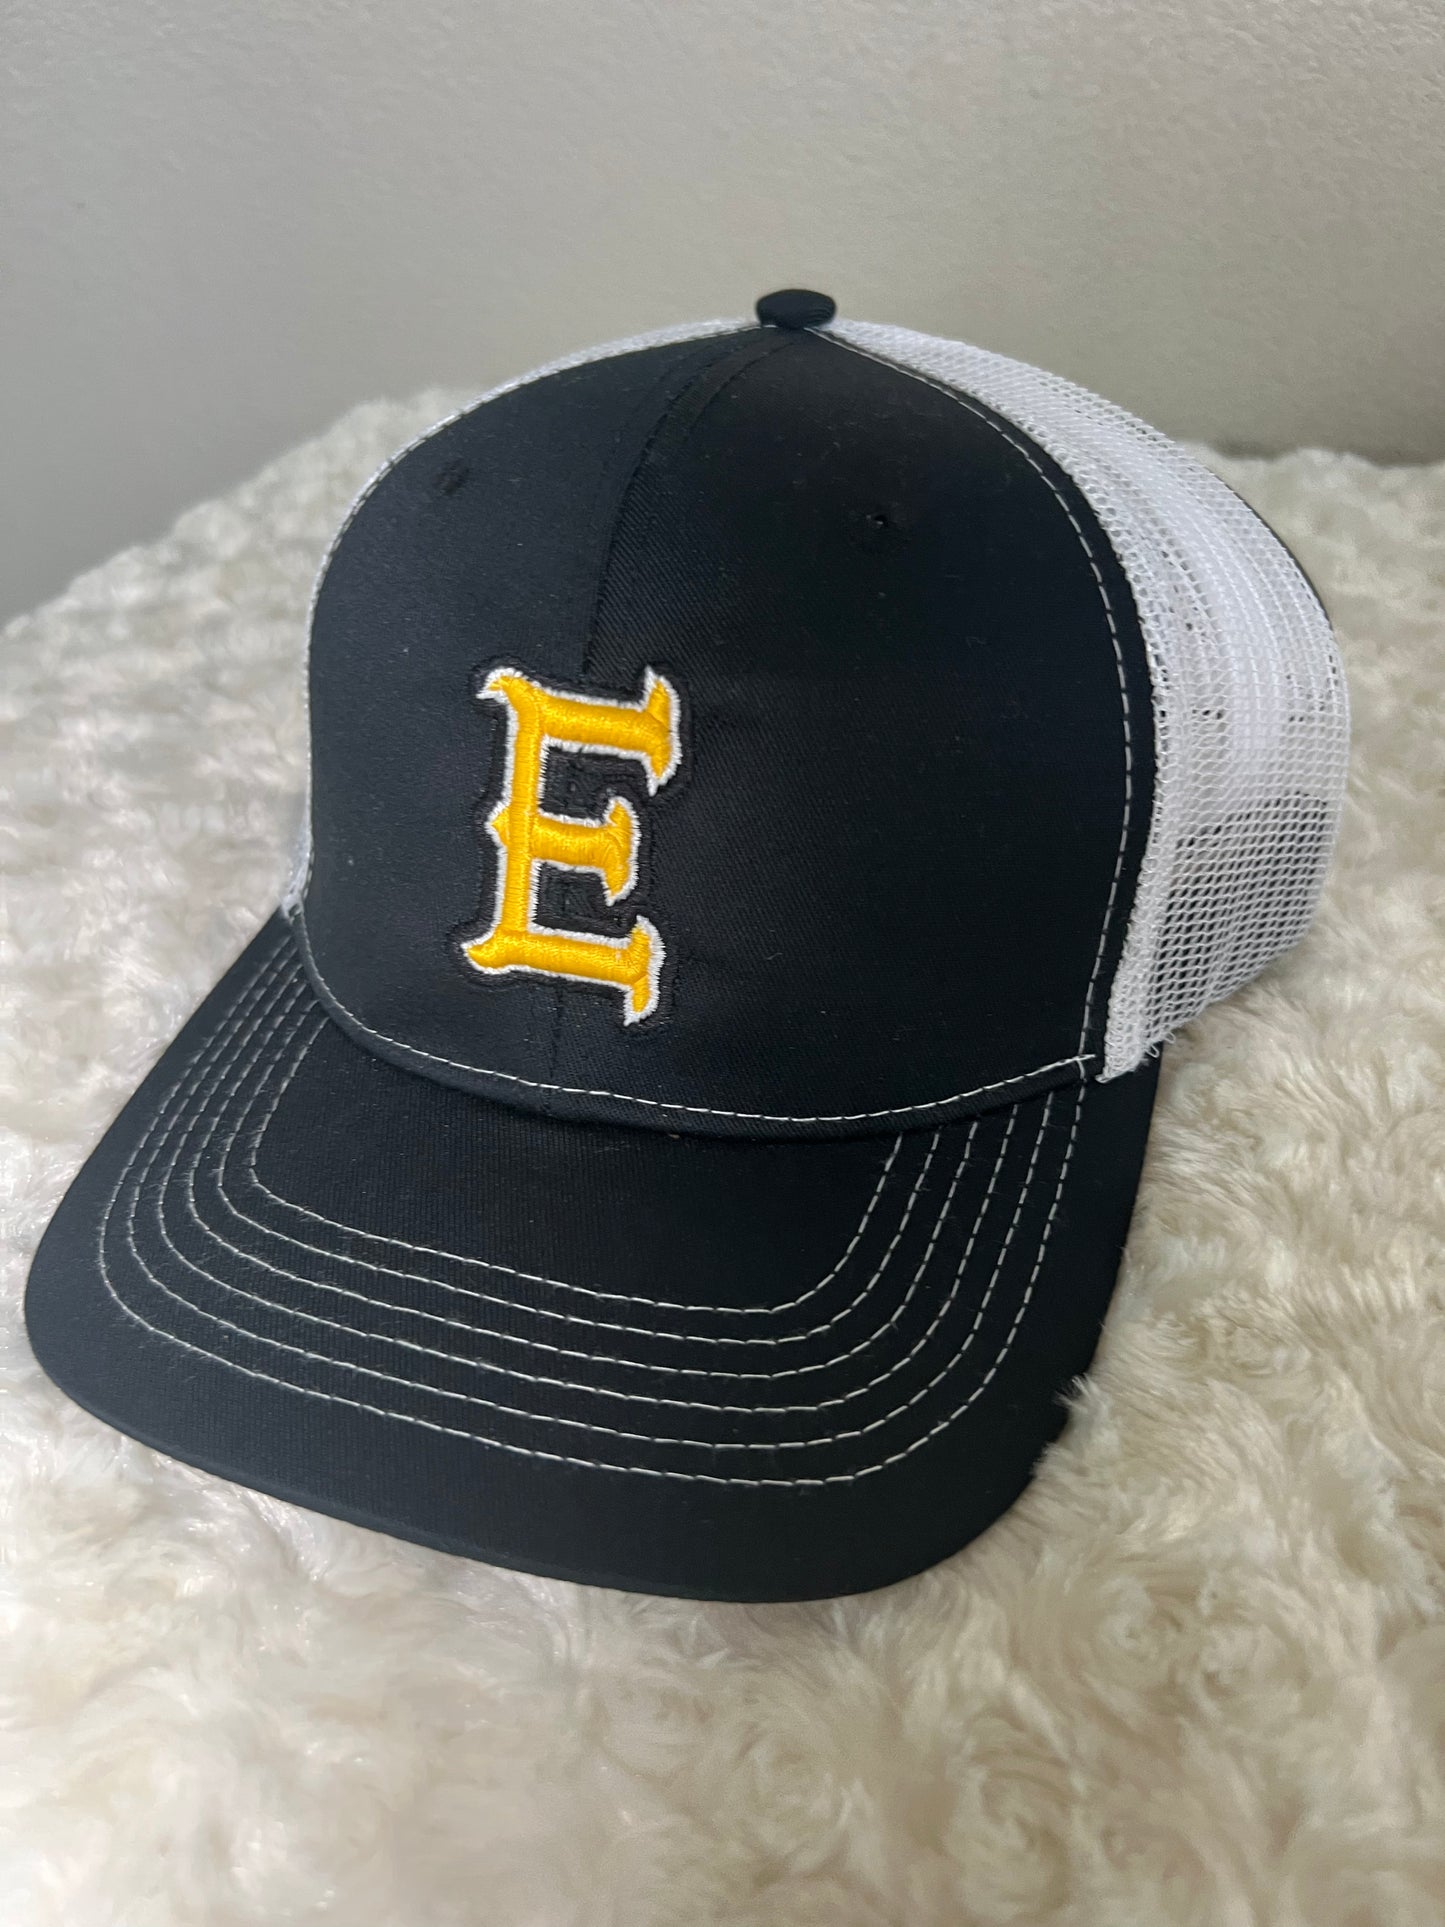 “E” Logo white hat